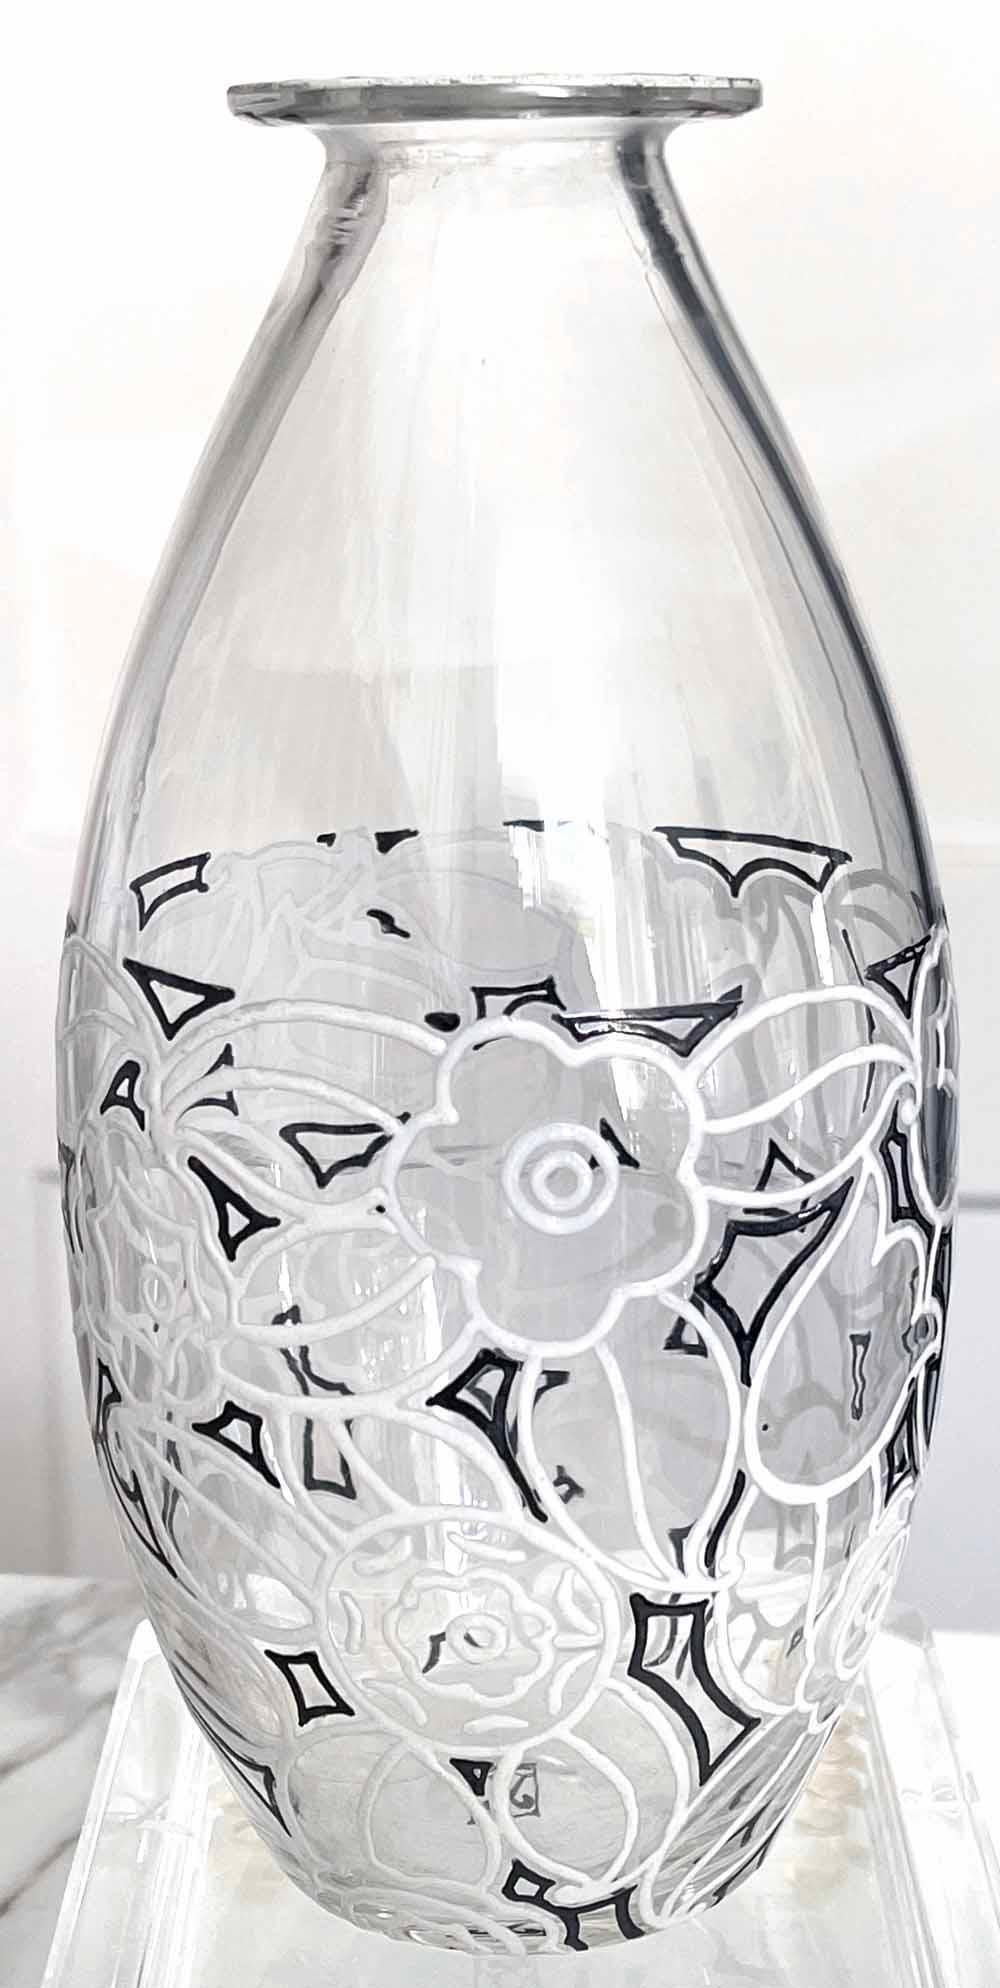 Bien que René Lalique ait régné en maître sur les pièces en verre moulé haut de gamme de la manière stylisée que nous appelons aujourd'hui Art déco, dans le domaine connexe du verre émaillé et décoré, Jean Luce a été l'un des principaux créateurs